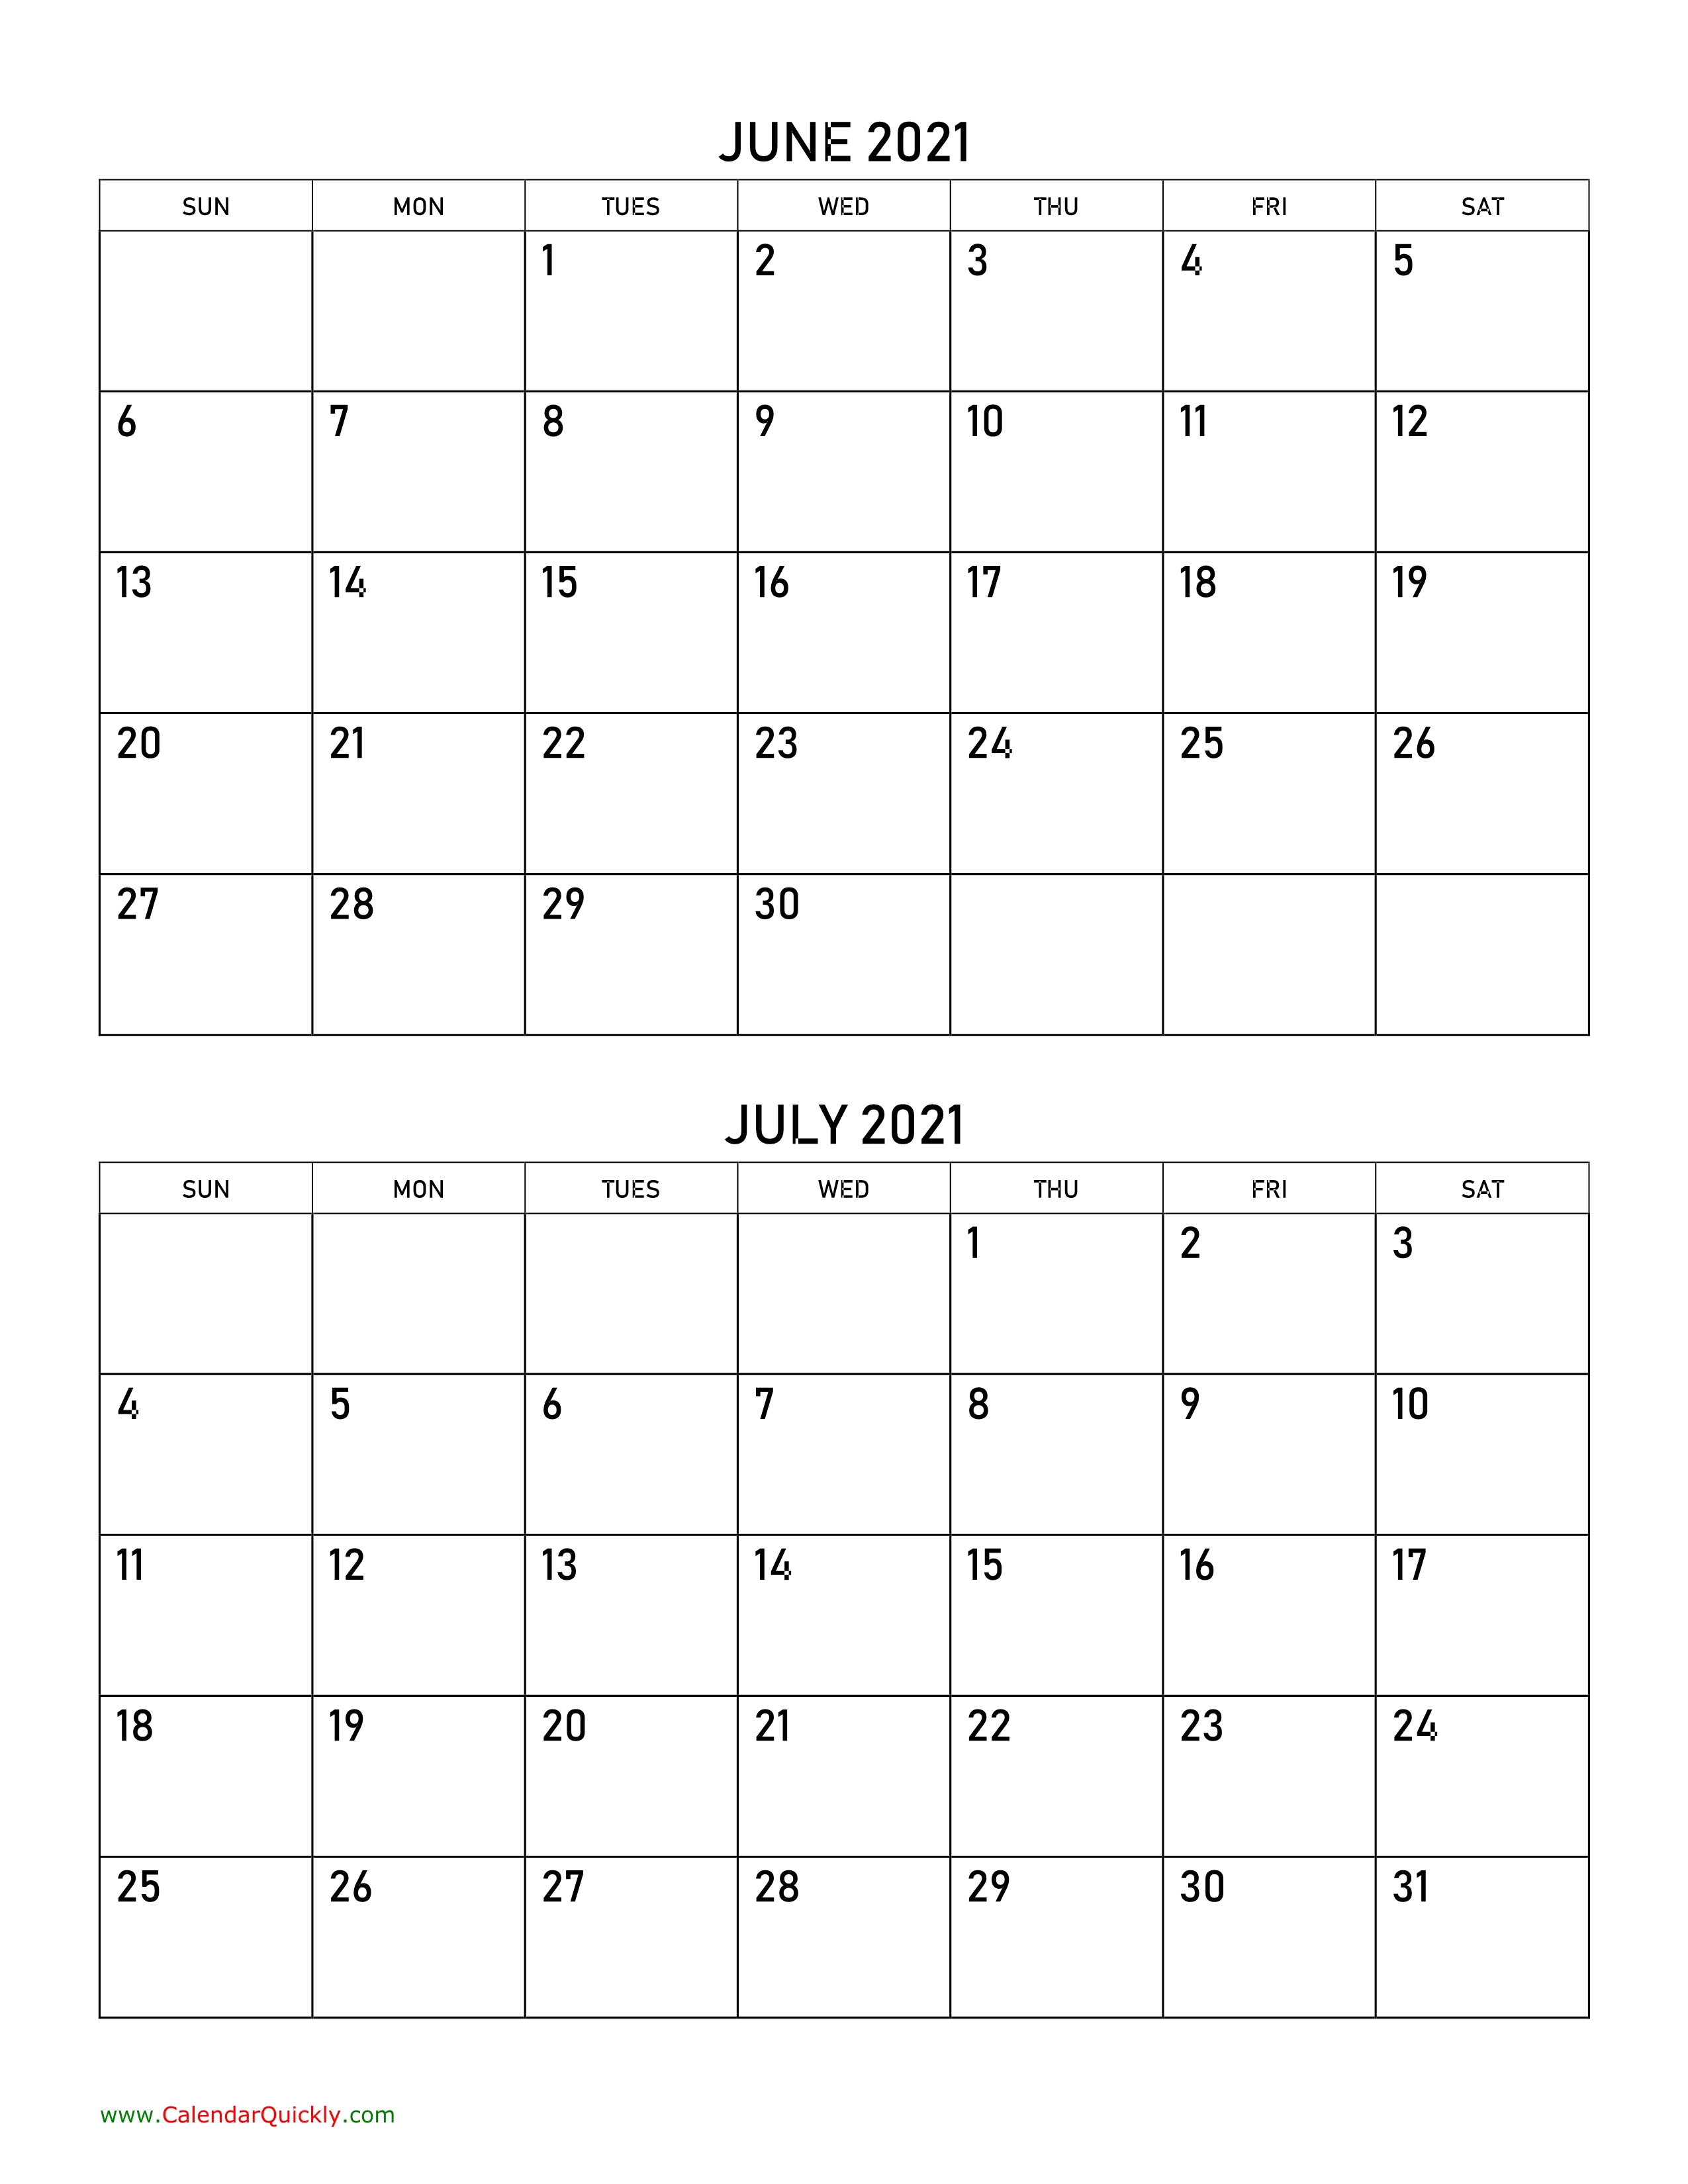 June And July 2021 Calendar | Calendar Quickly June-August 2021 Calendar